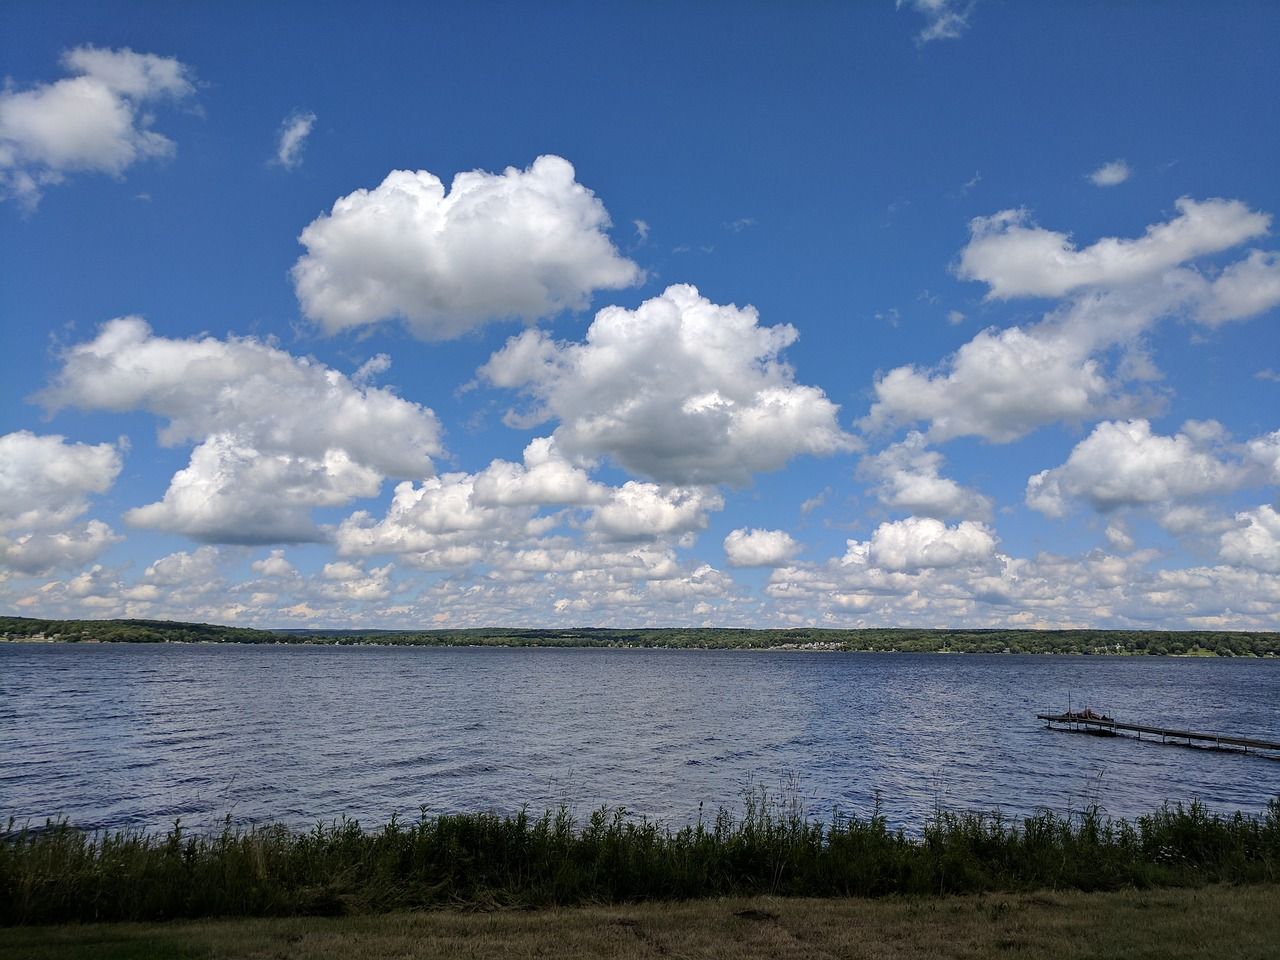 Scenic view of Chautauqua Lake near Jamestown, New York